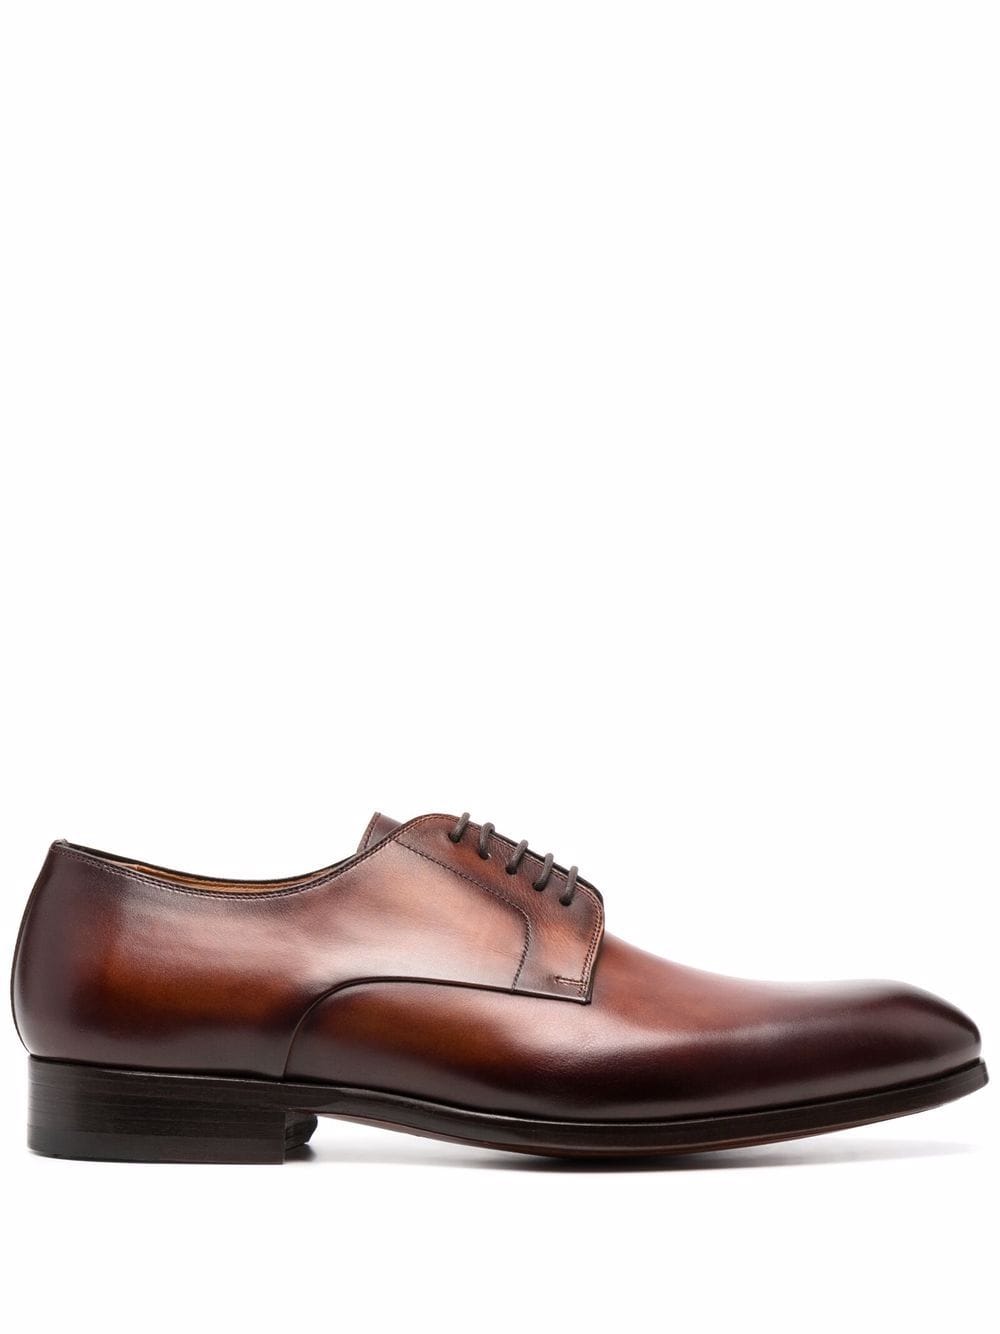 Magnanni leather derby shoes - Brown von Magnanni